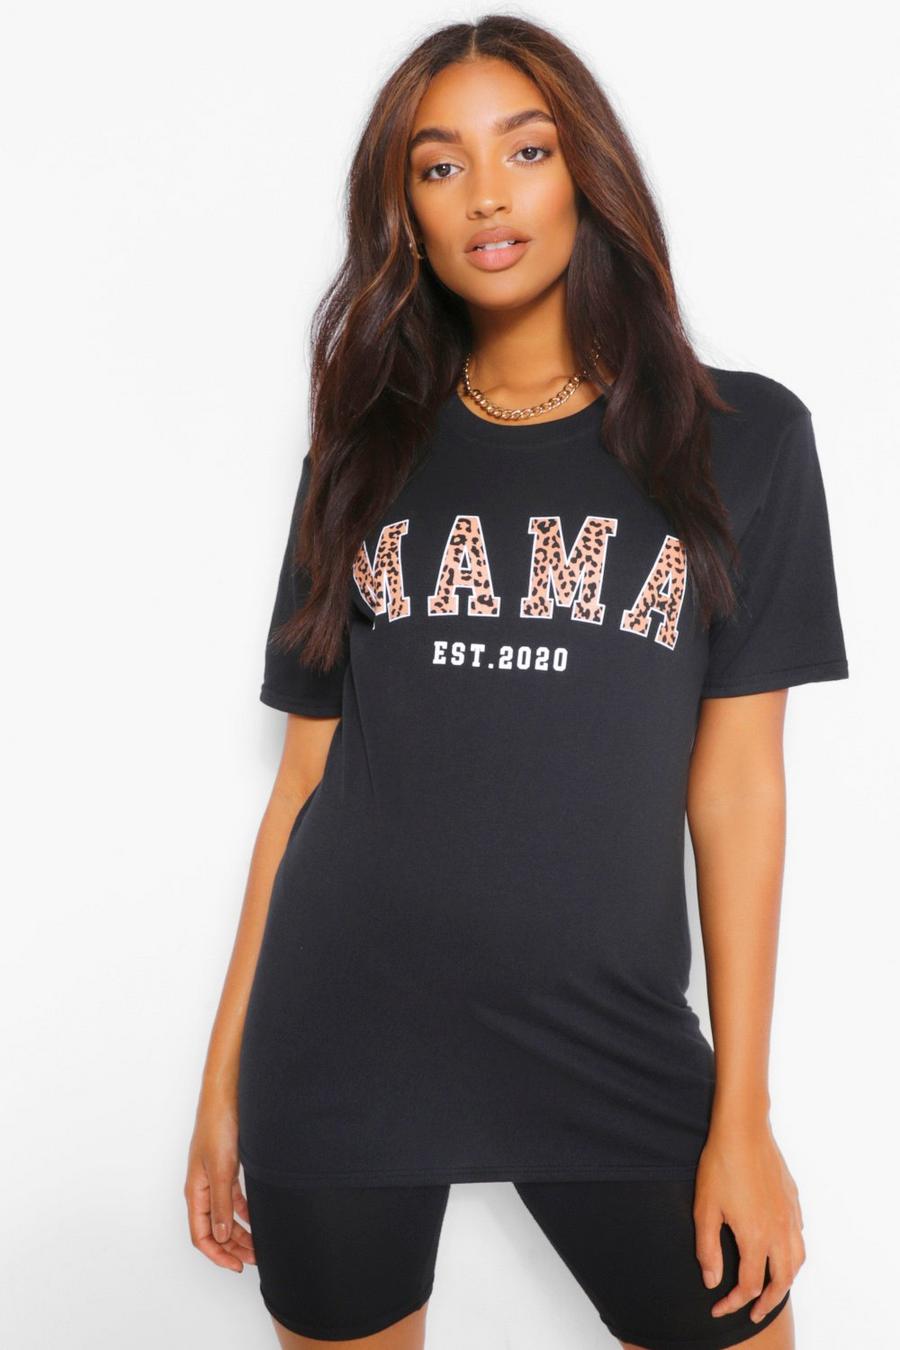 Camiseta con eslogan "Mama Est 2020" de leopardo Ropa premamá image number 1